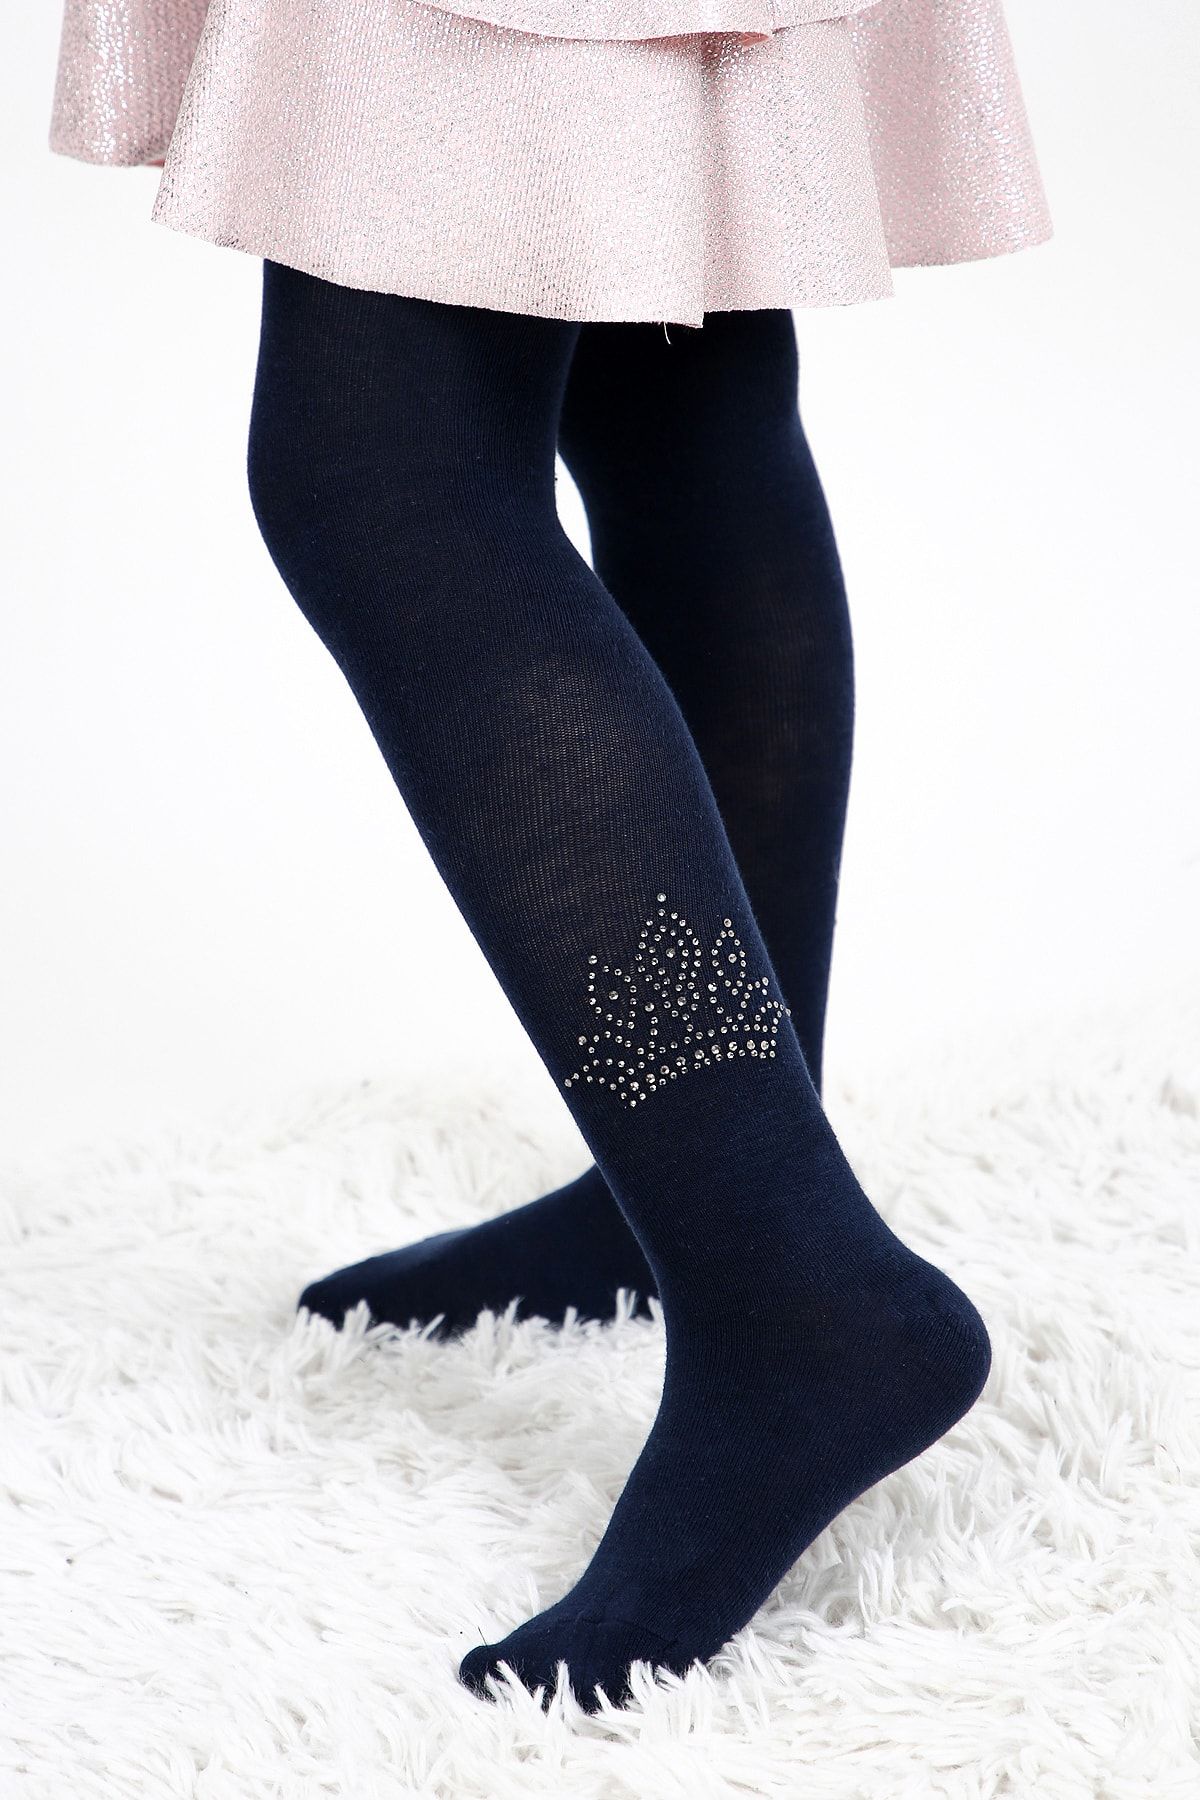 Uçs Kız Çocuk Taç Desen Kristal Taş Baskılı Lacivert Renk Külotlu Çorap 1 Adet